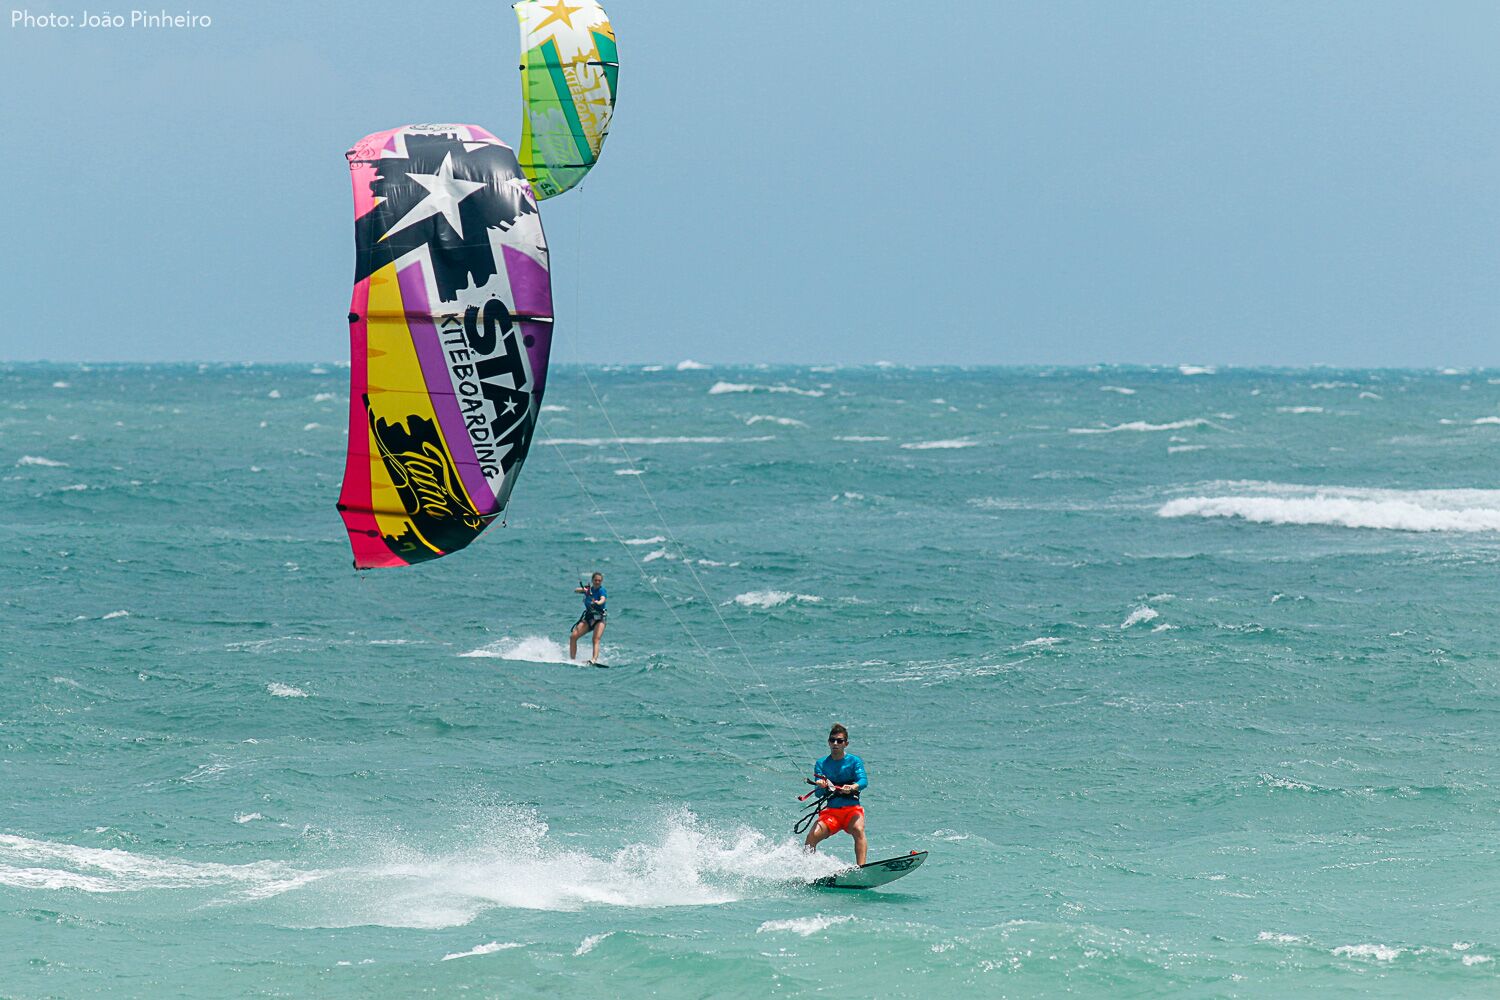 Kitesurfer surfs a surf board in Natal.